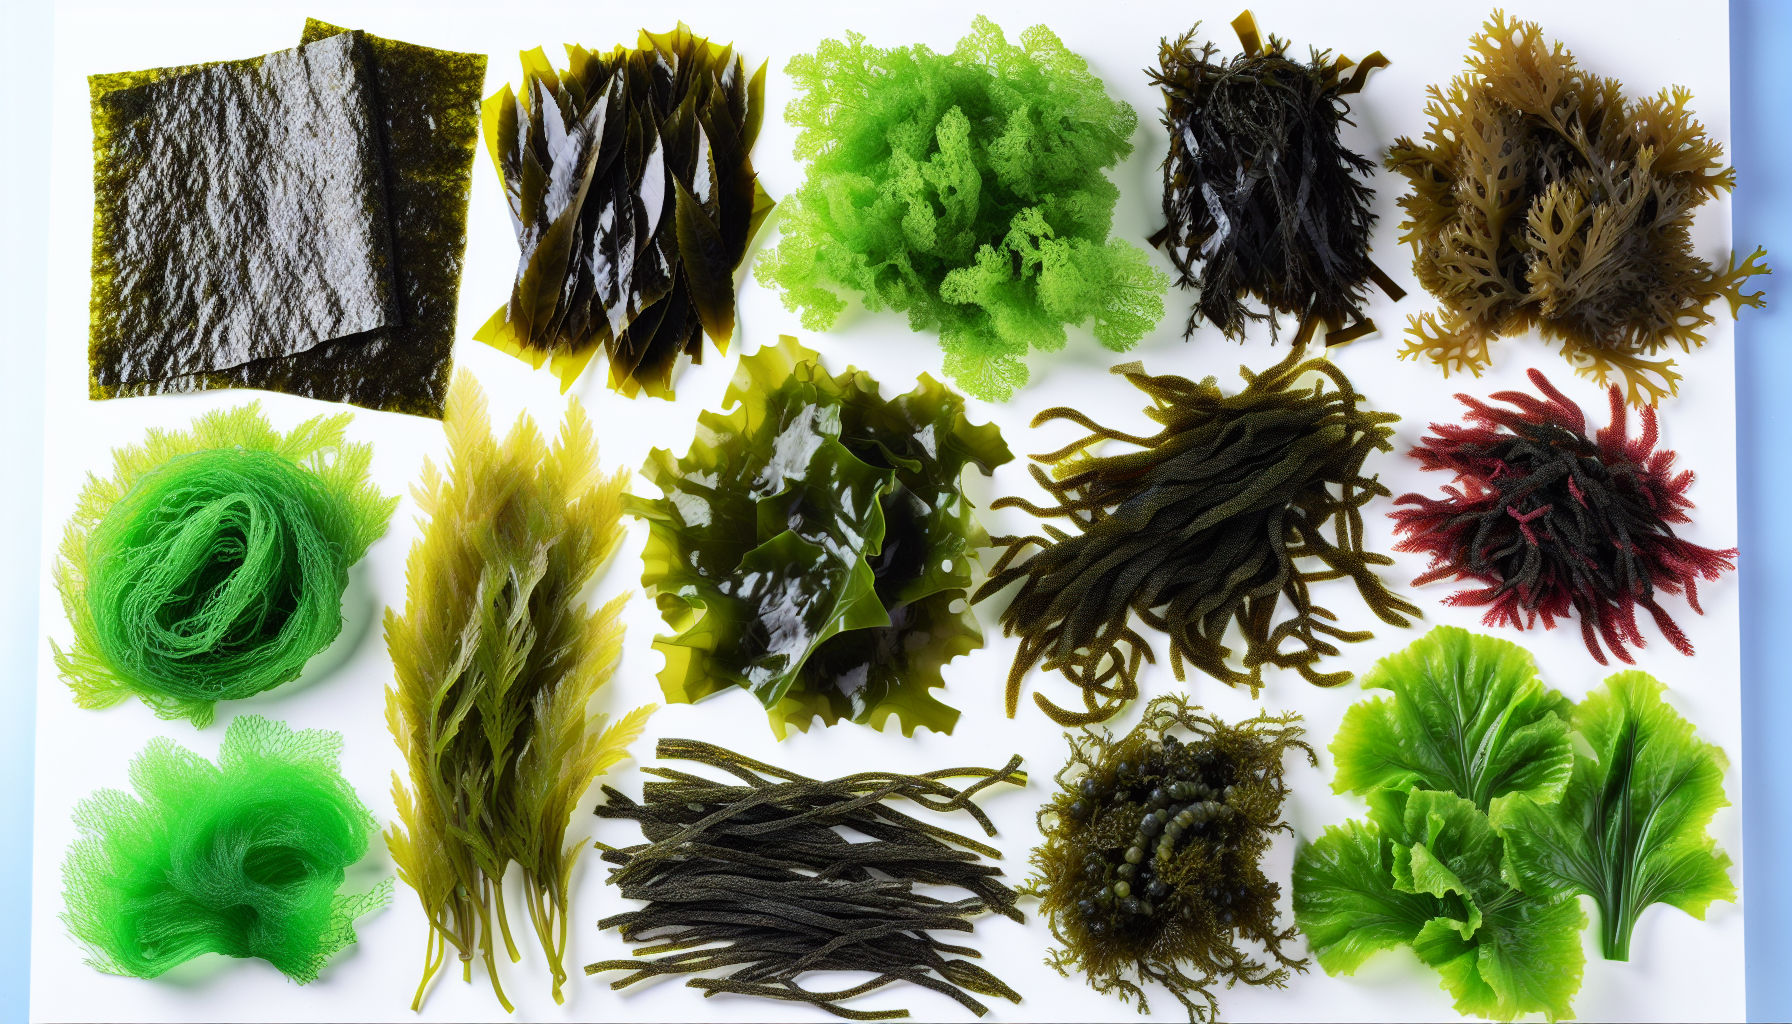 Variety of edible seaweed